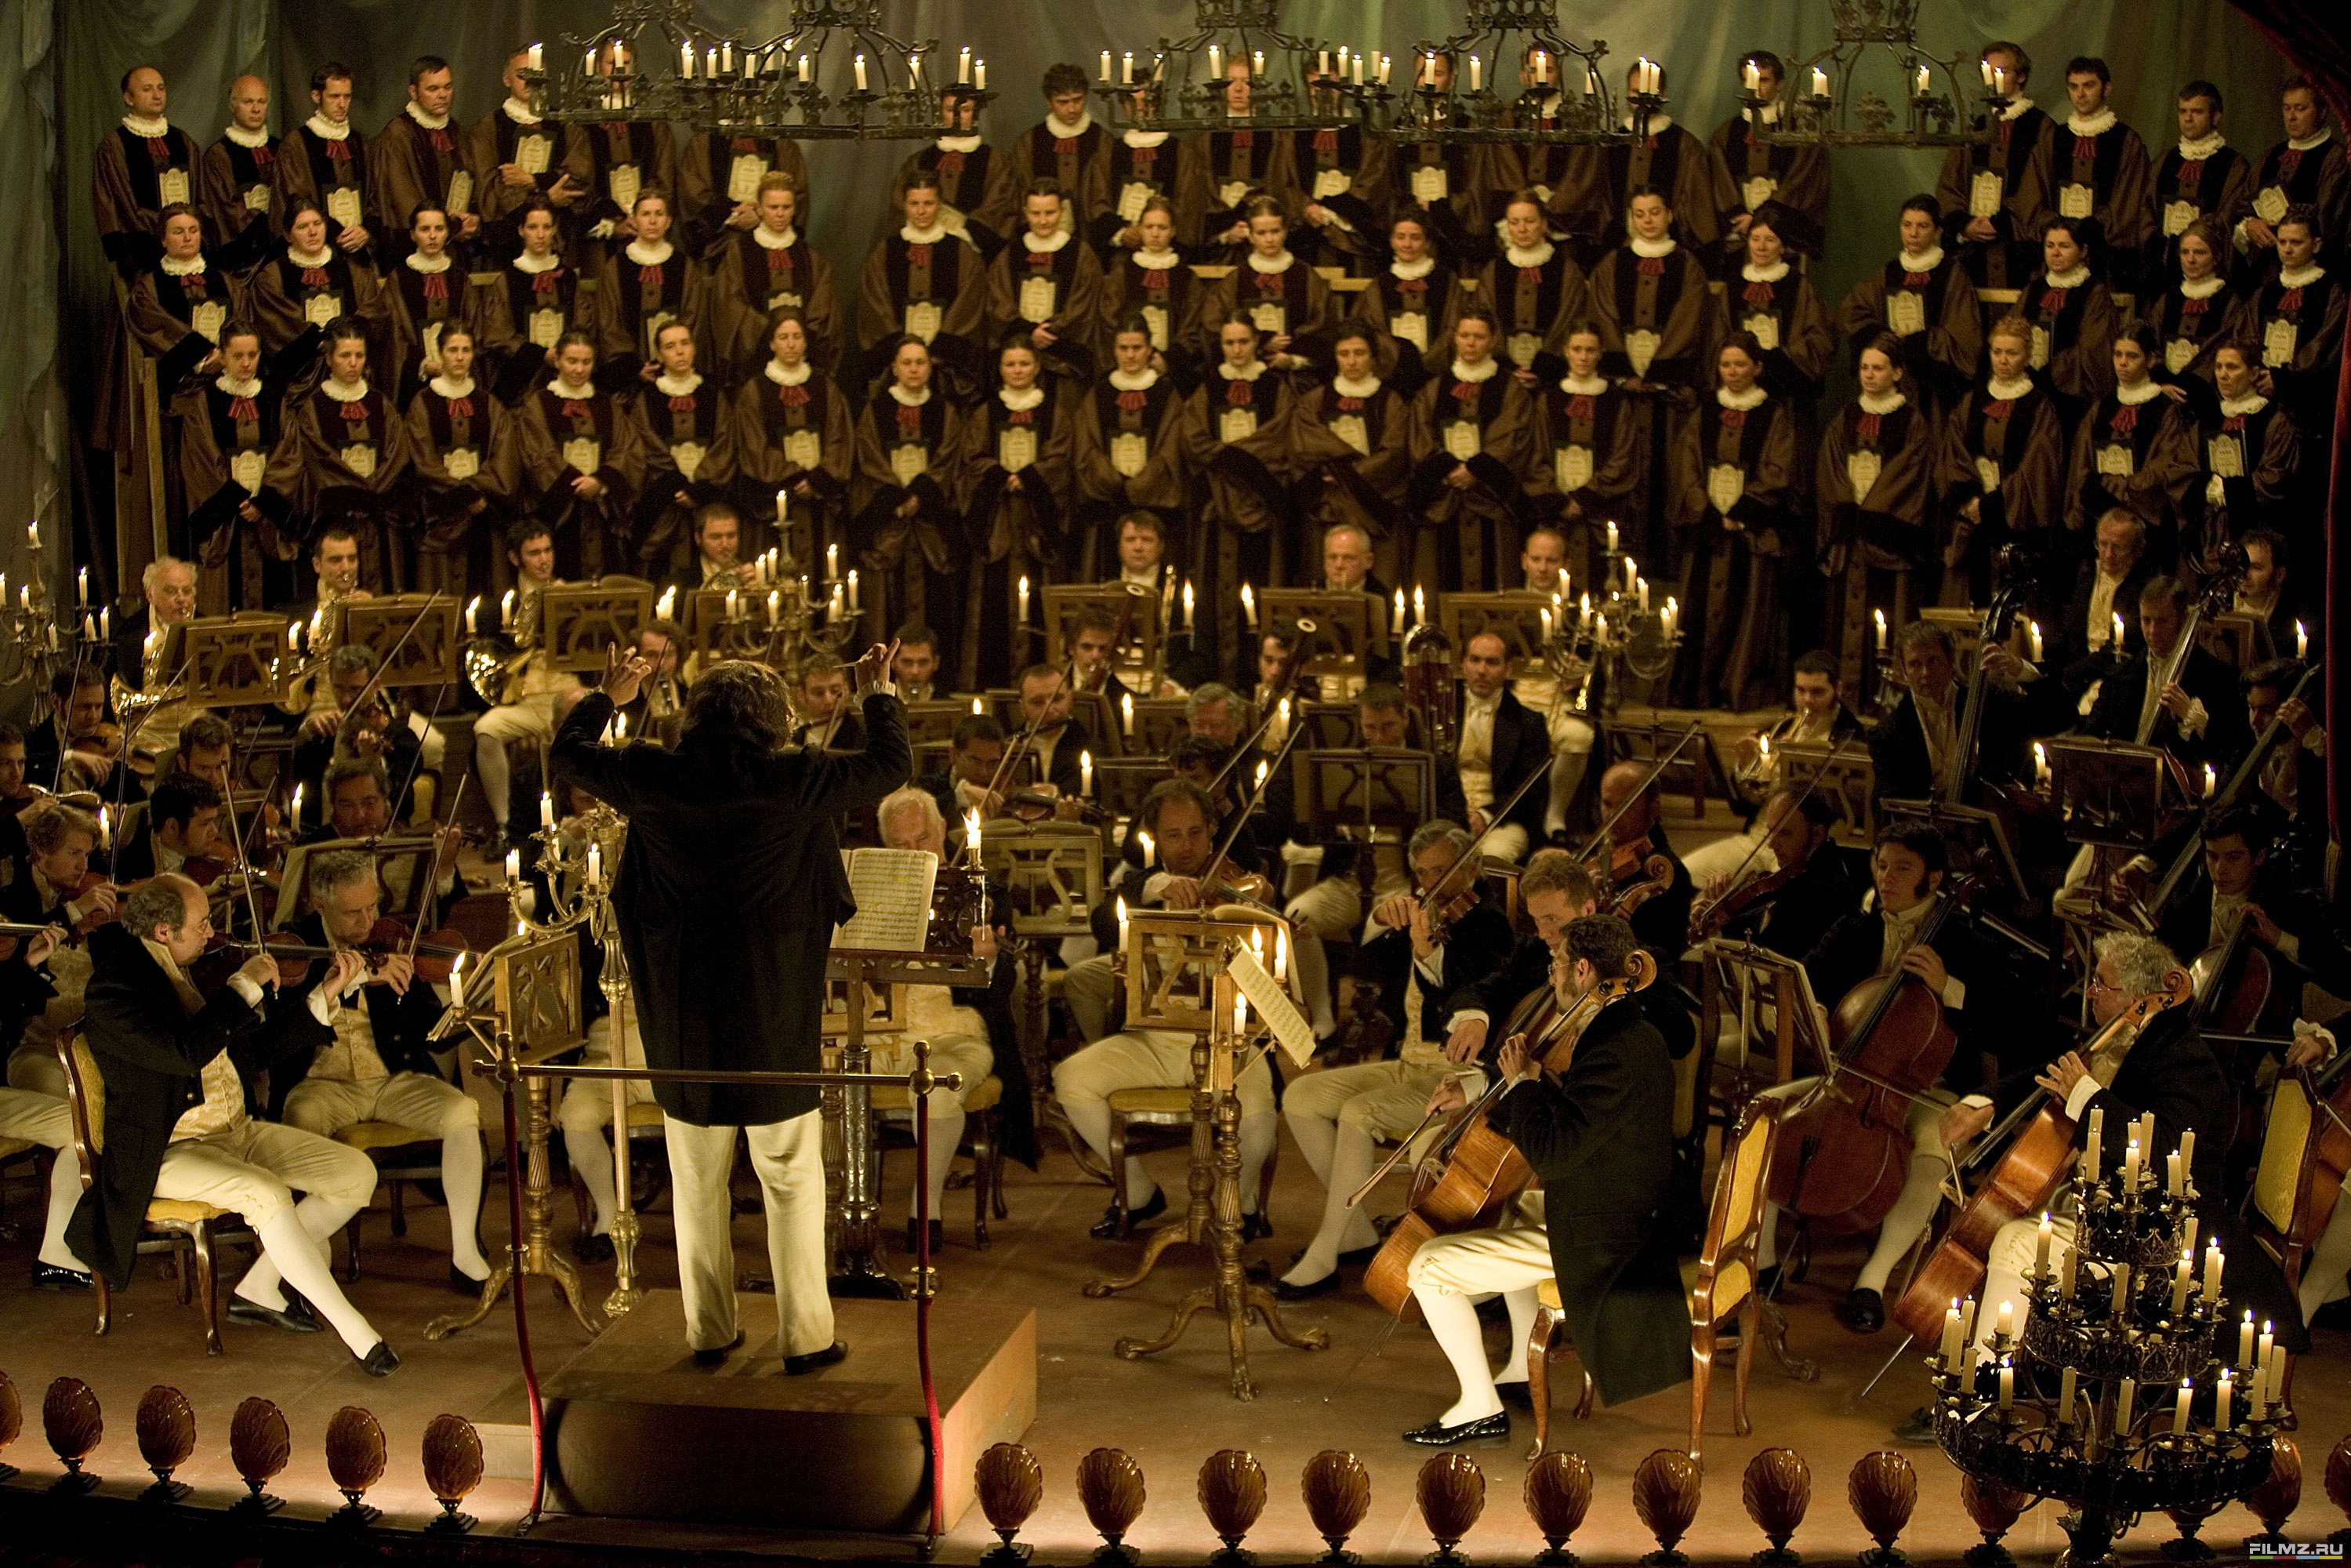 Бетховен дирижирует. Бетховен. "Переписывая Бетховена". 2006. Бетховен дирижирует оркестром.